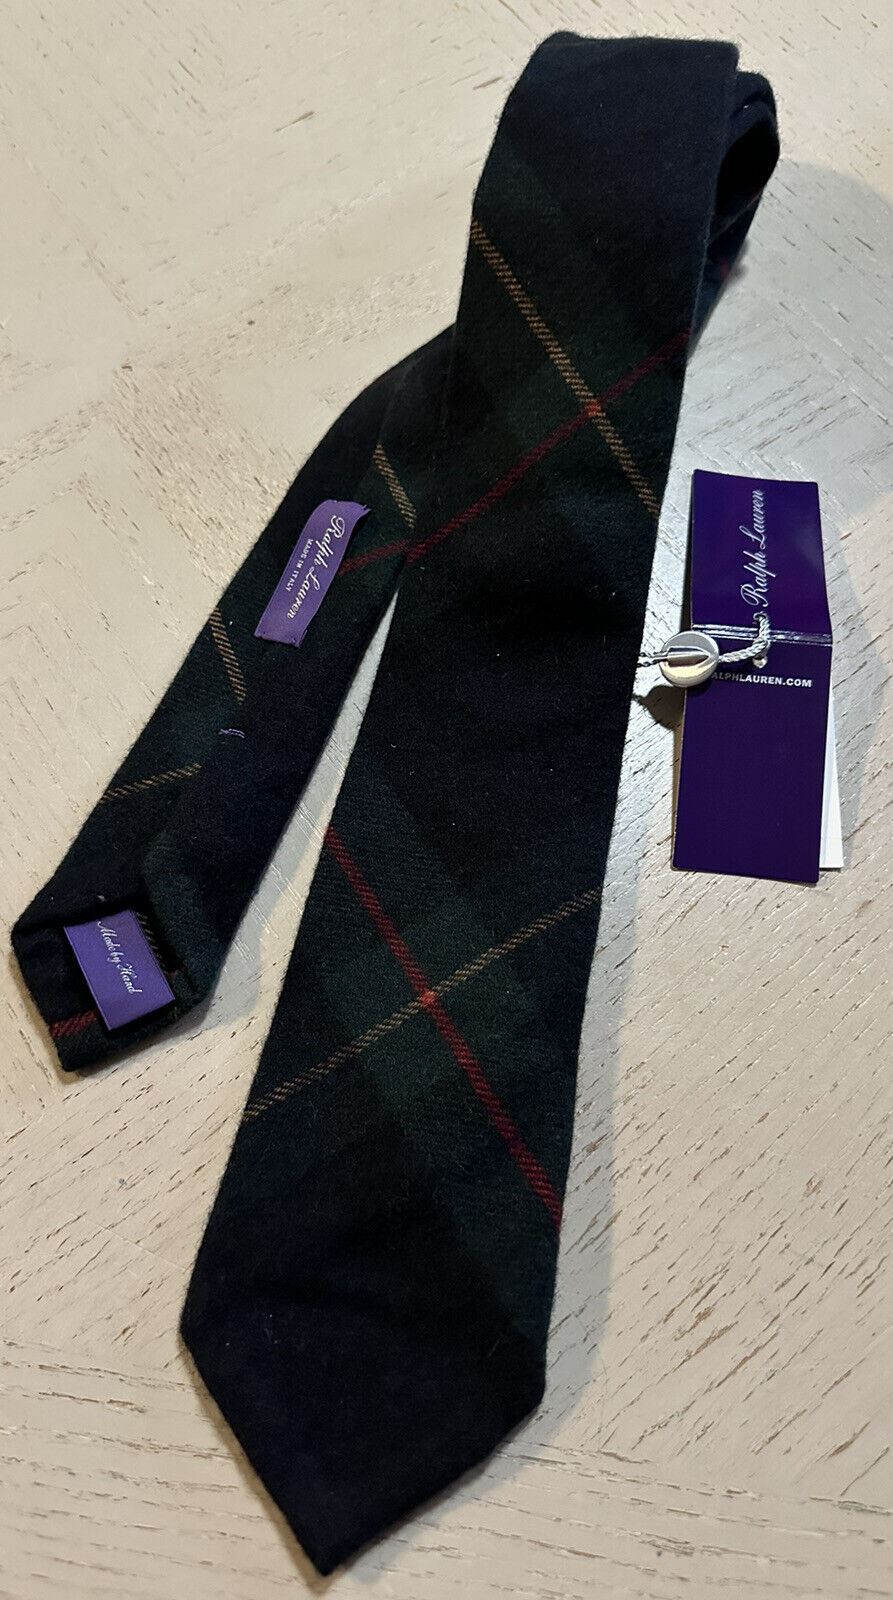 Новый кашемировый галстук Gr/Y/R Ralph Lauren Purple Label стоимостью 265 долларов, сделанный вручную в Италии